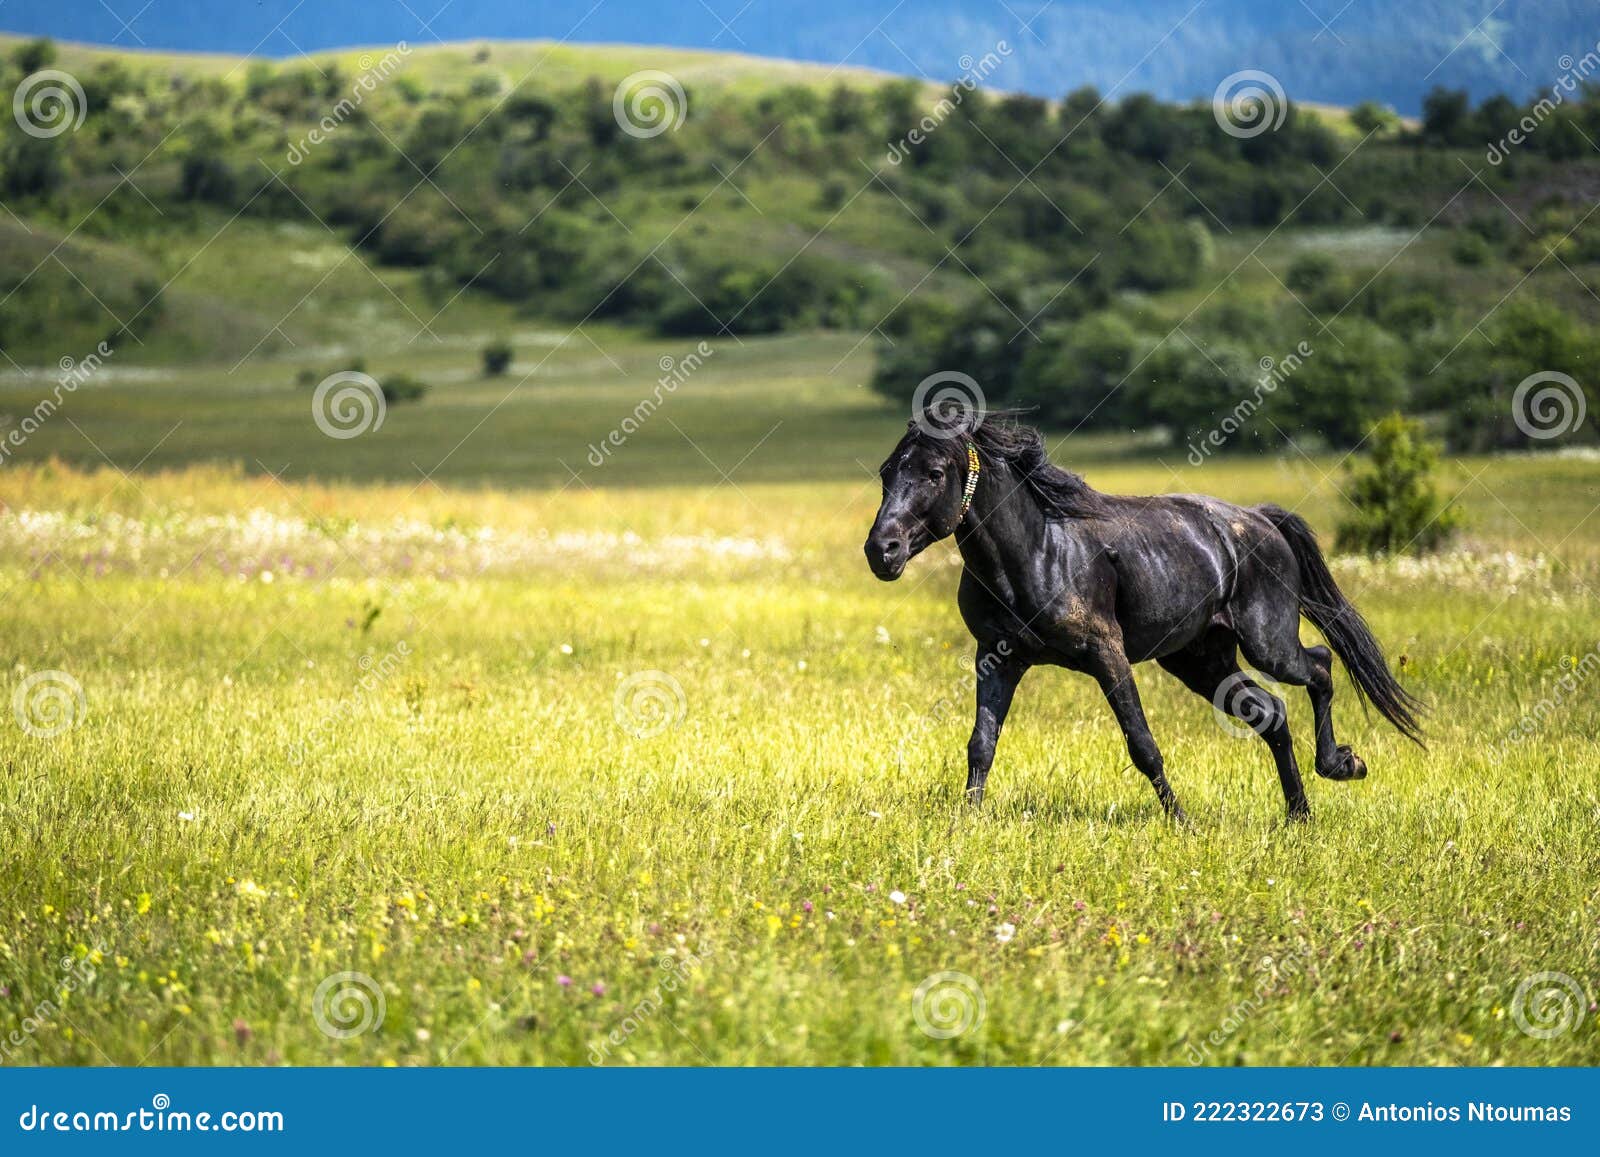 Hãy khám phá bức ảnh ngựa đen và hoa vàng tuyệt đẹp này! Với cánh đồng hoa vàng tươi sáng và một con ngựa đen đầy sức sống, bức ảnh này chắc chắn sẽ làm cho bạn cảm thấy tự do và hạnh phúc. Cảnh quan tuyệt đẹp này sẽ khiến bạn đắm mình trong cảm giác yên bình và tươi mới.